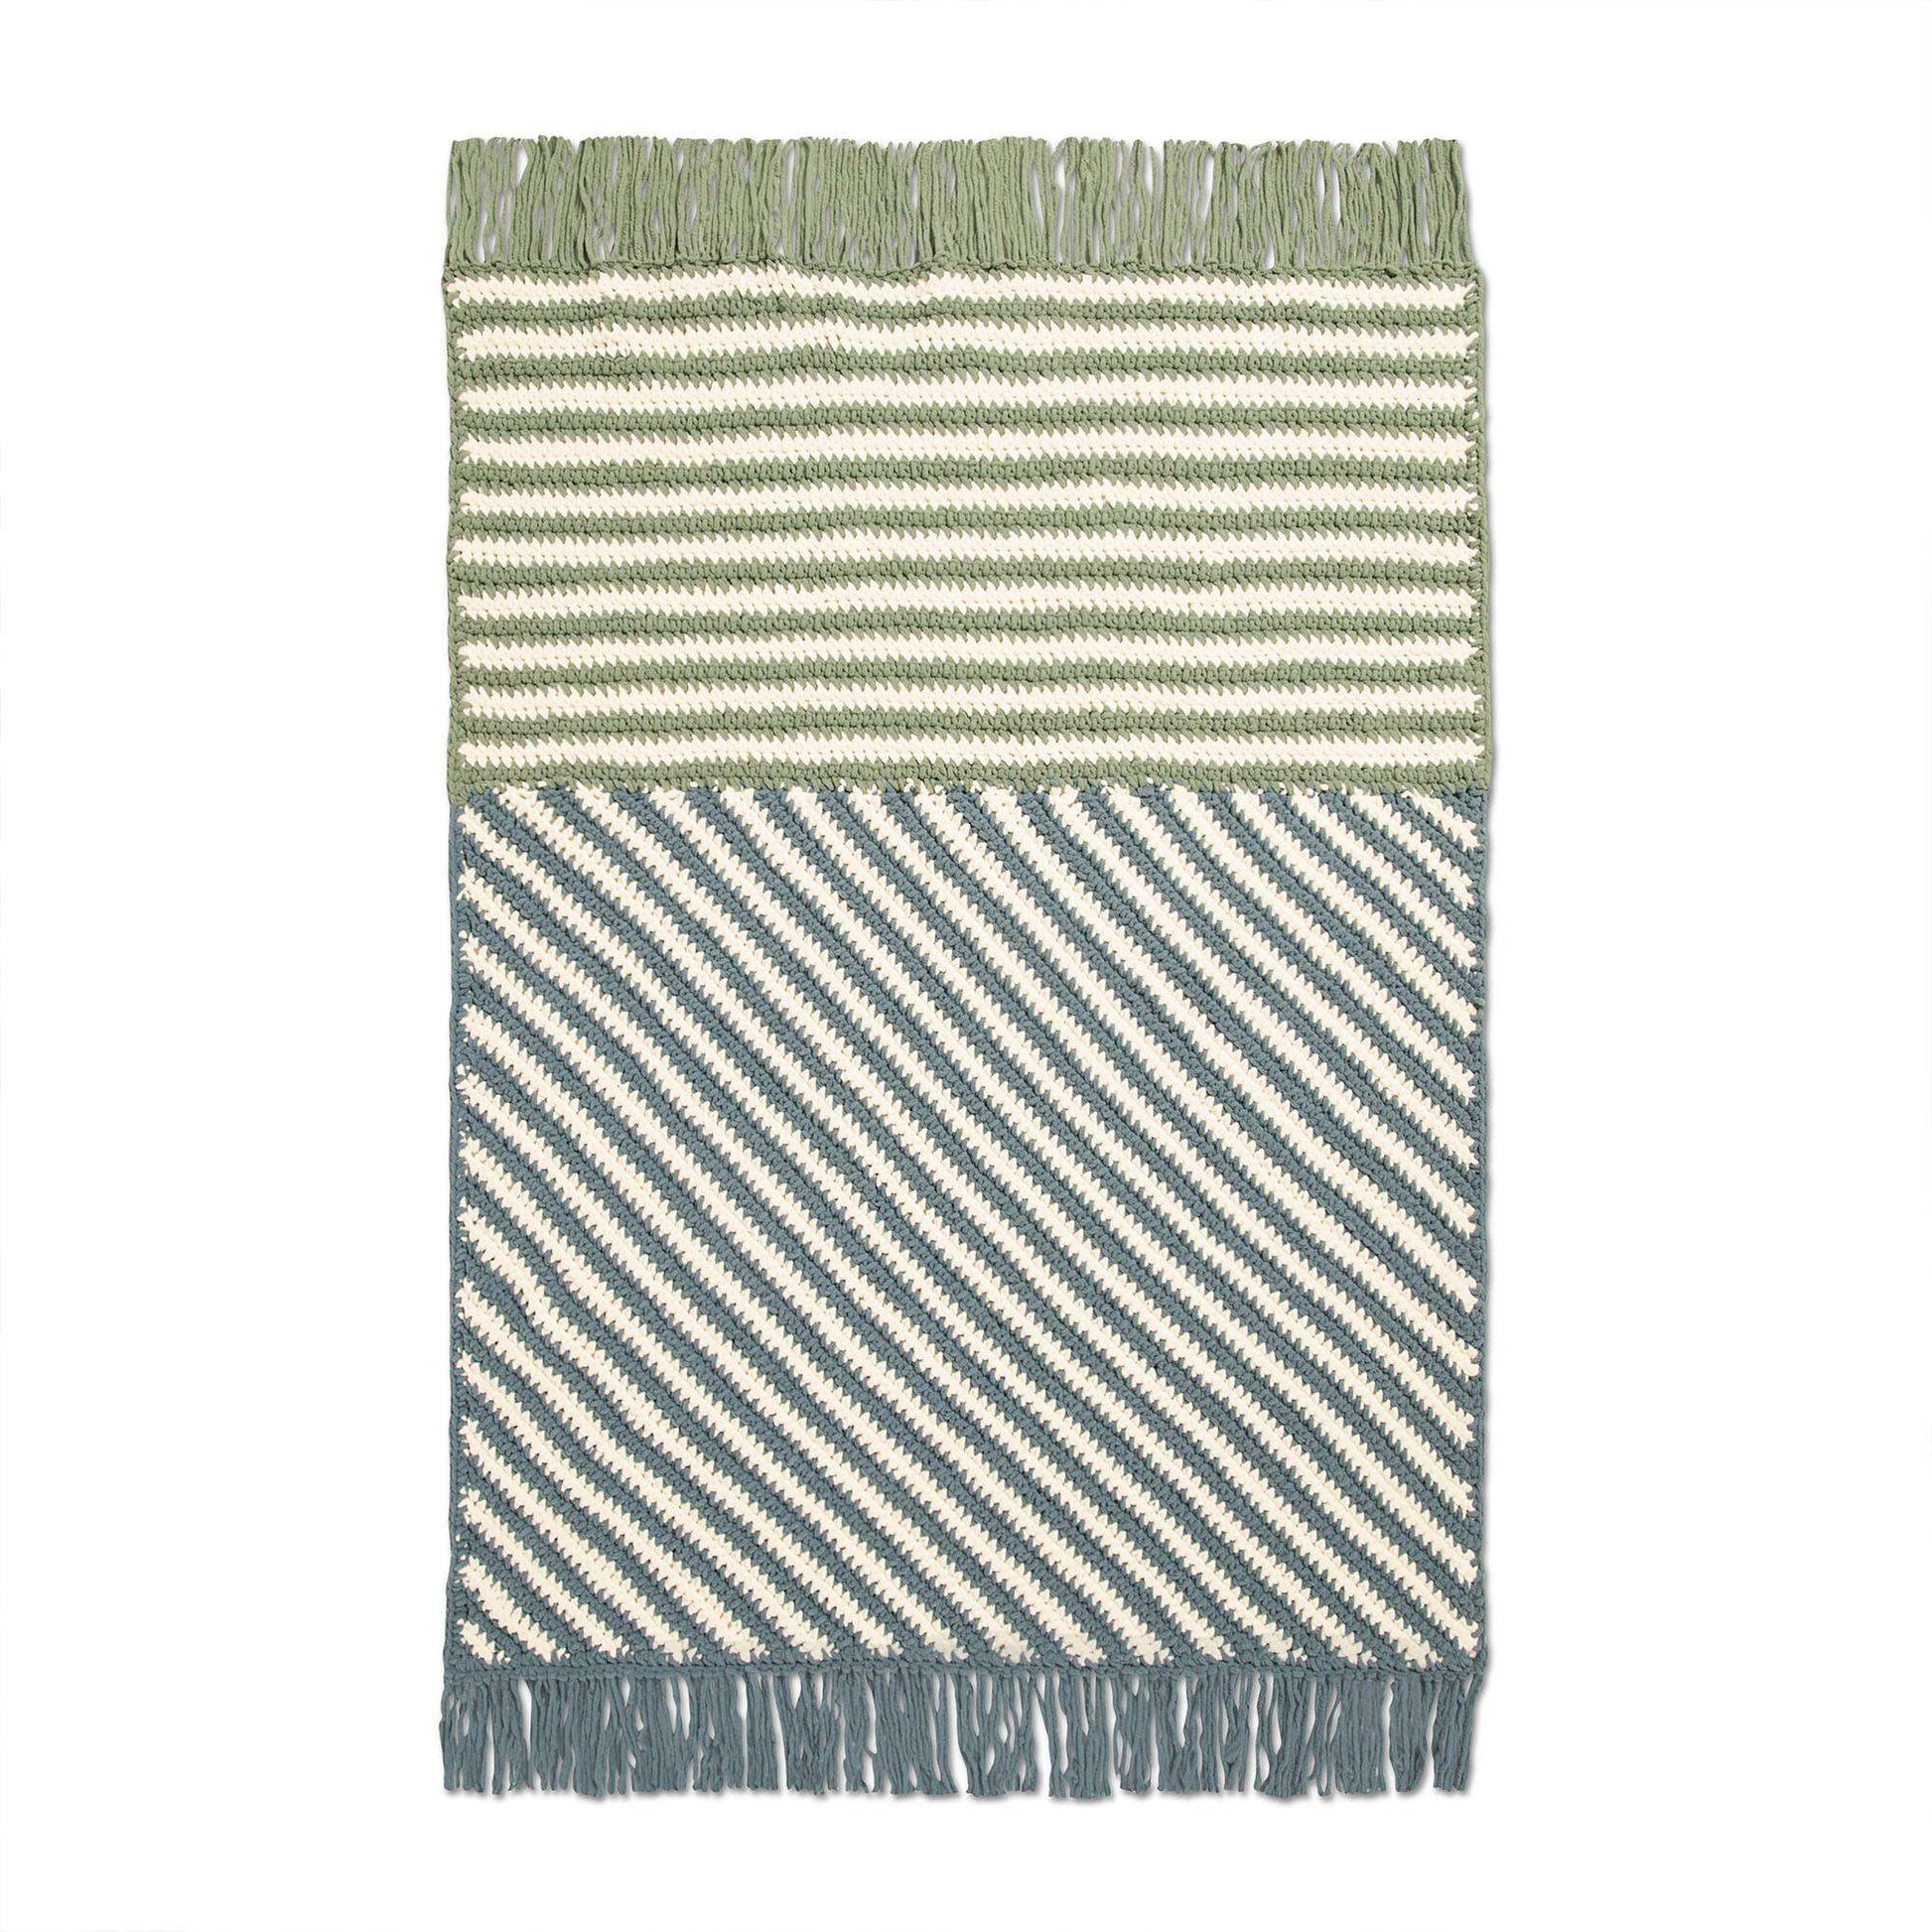 Free Bernat Geometric Intersection Striped Crochet Blanket Pattern